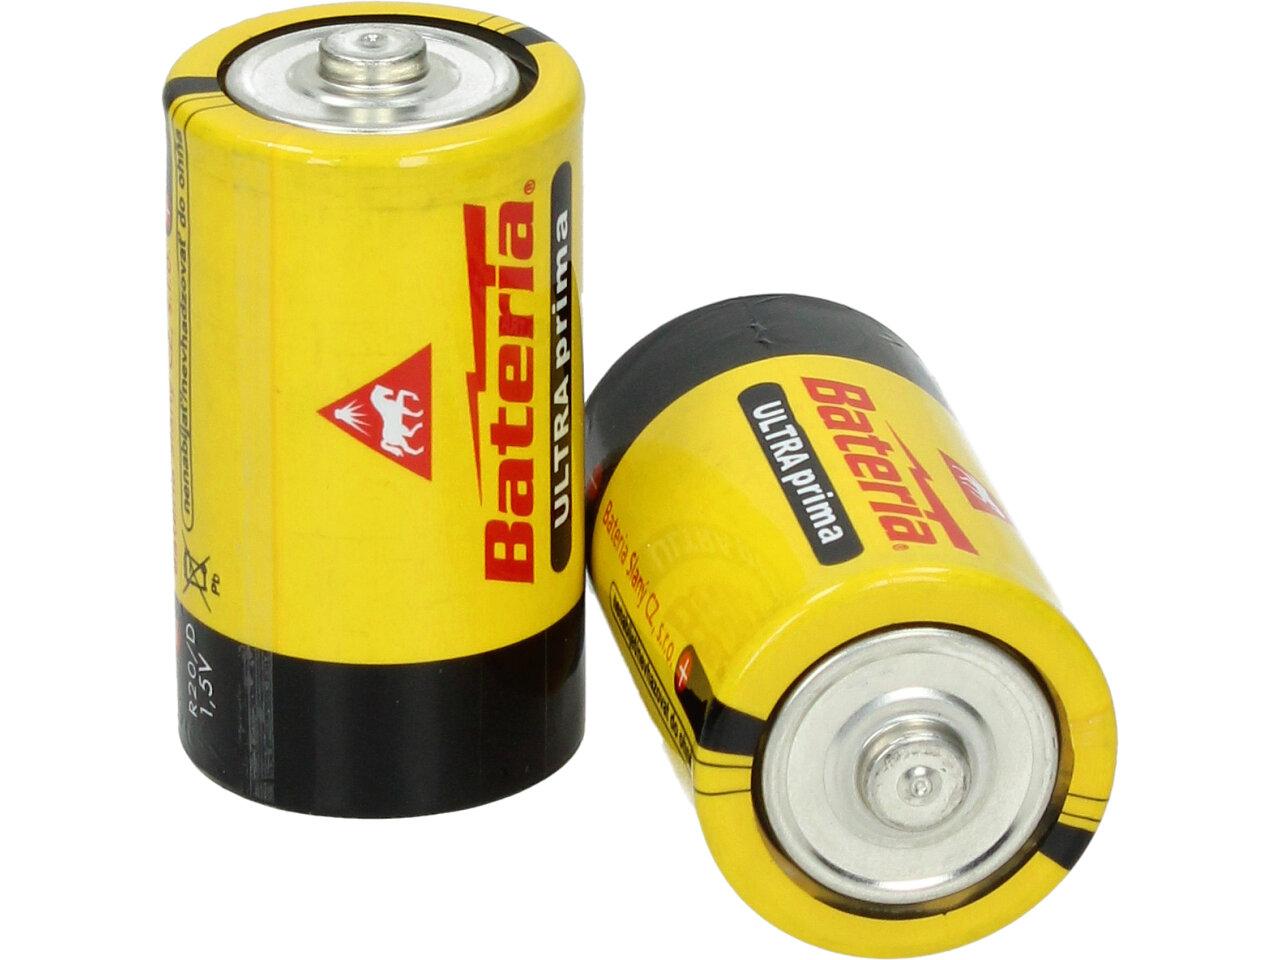 Baterie R20 1,5V/C - balení 2ks